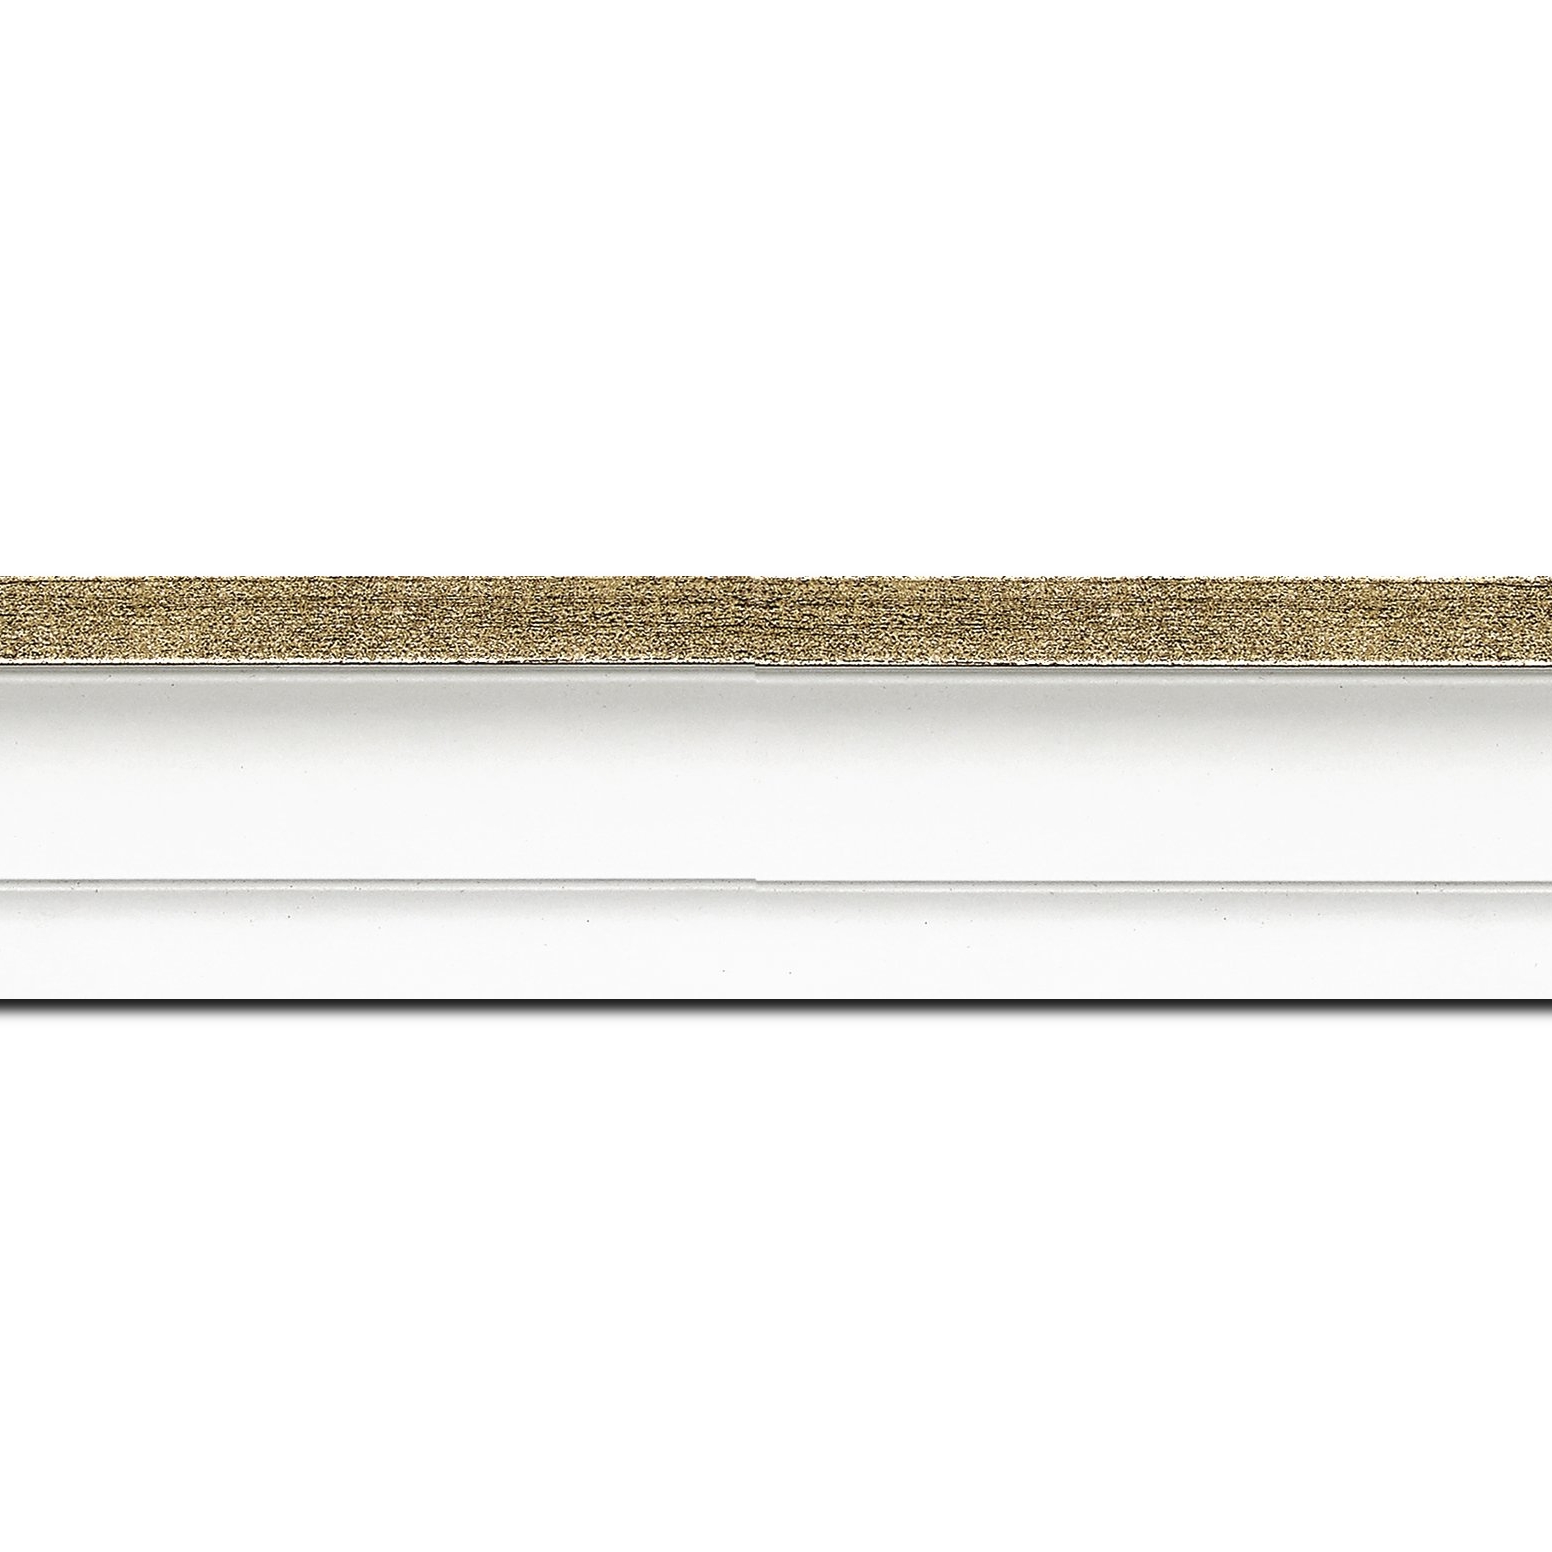 Pack par 12m, bois caisse américaine profil escalier largeur 4.4cm blanc mat filet or (spécialement conçu pour les châssis d'une épaisseur jusqu’à 2.5cm )(longueur baguette pouvant varier entre 2.40m et 3m selon arrivage des bois)